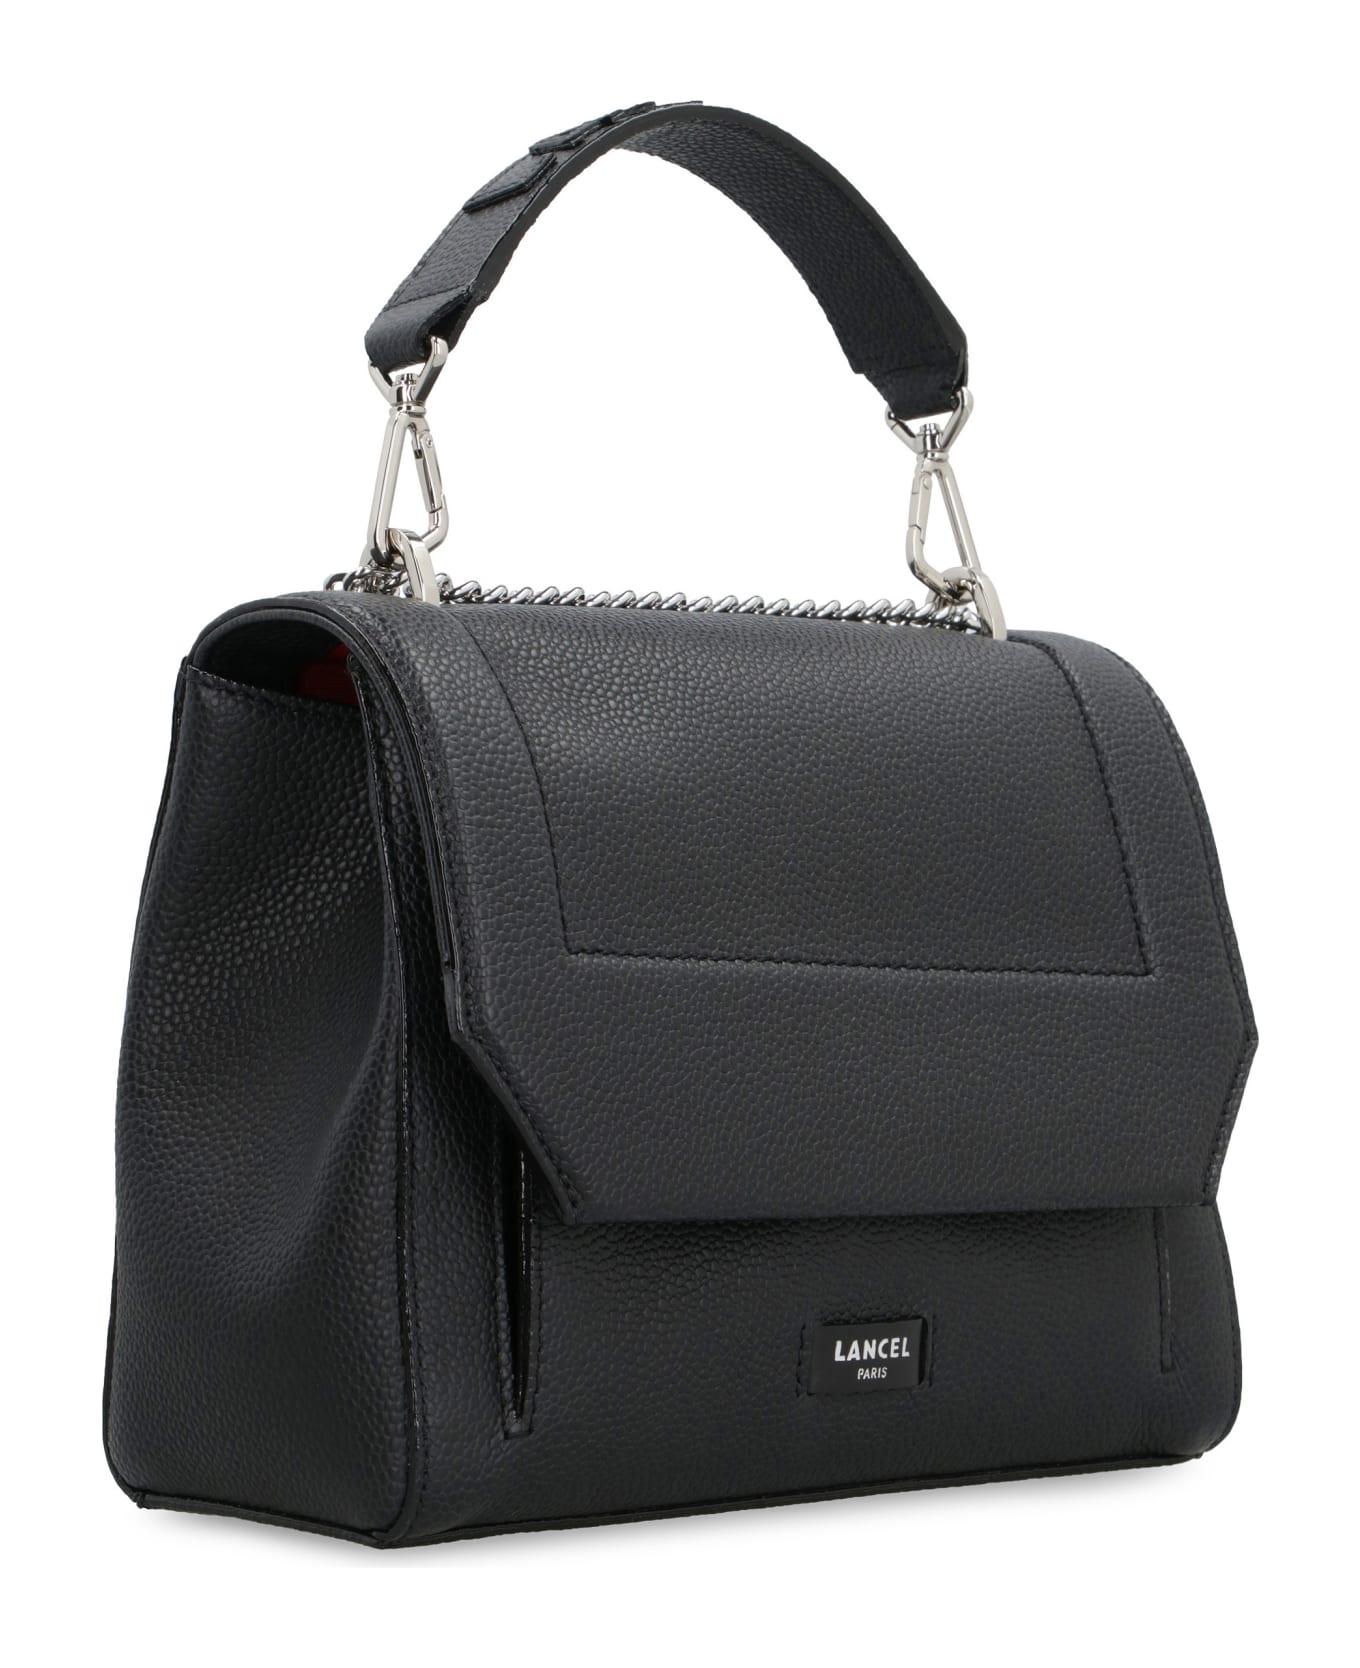 Lancel Ninon Leather Handbag - Black